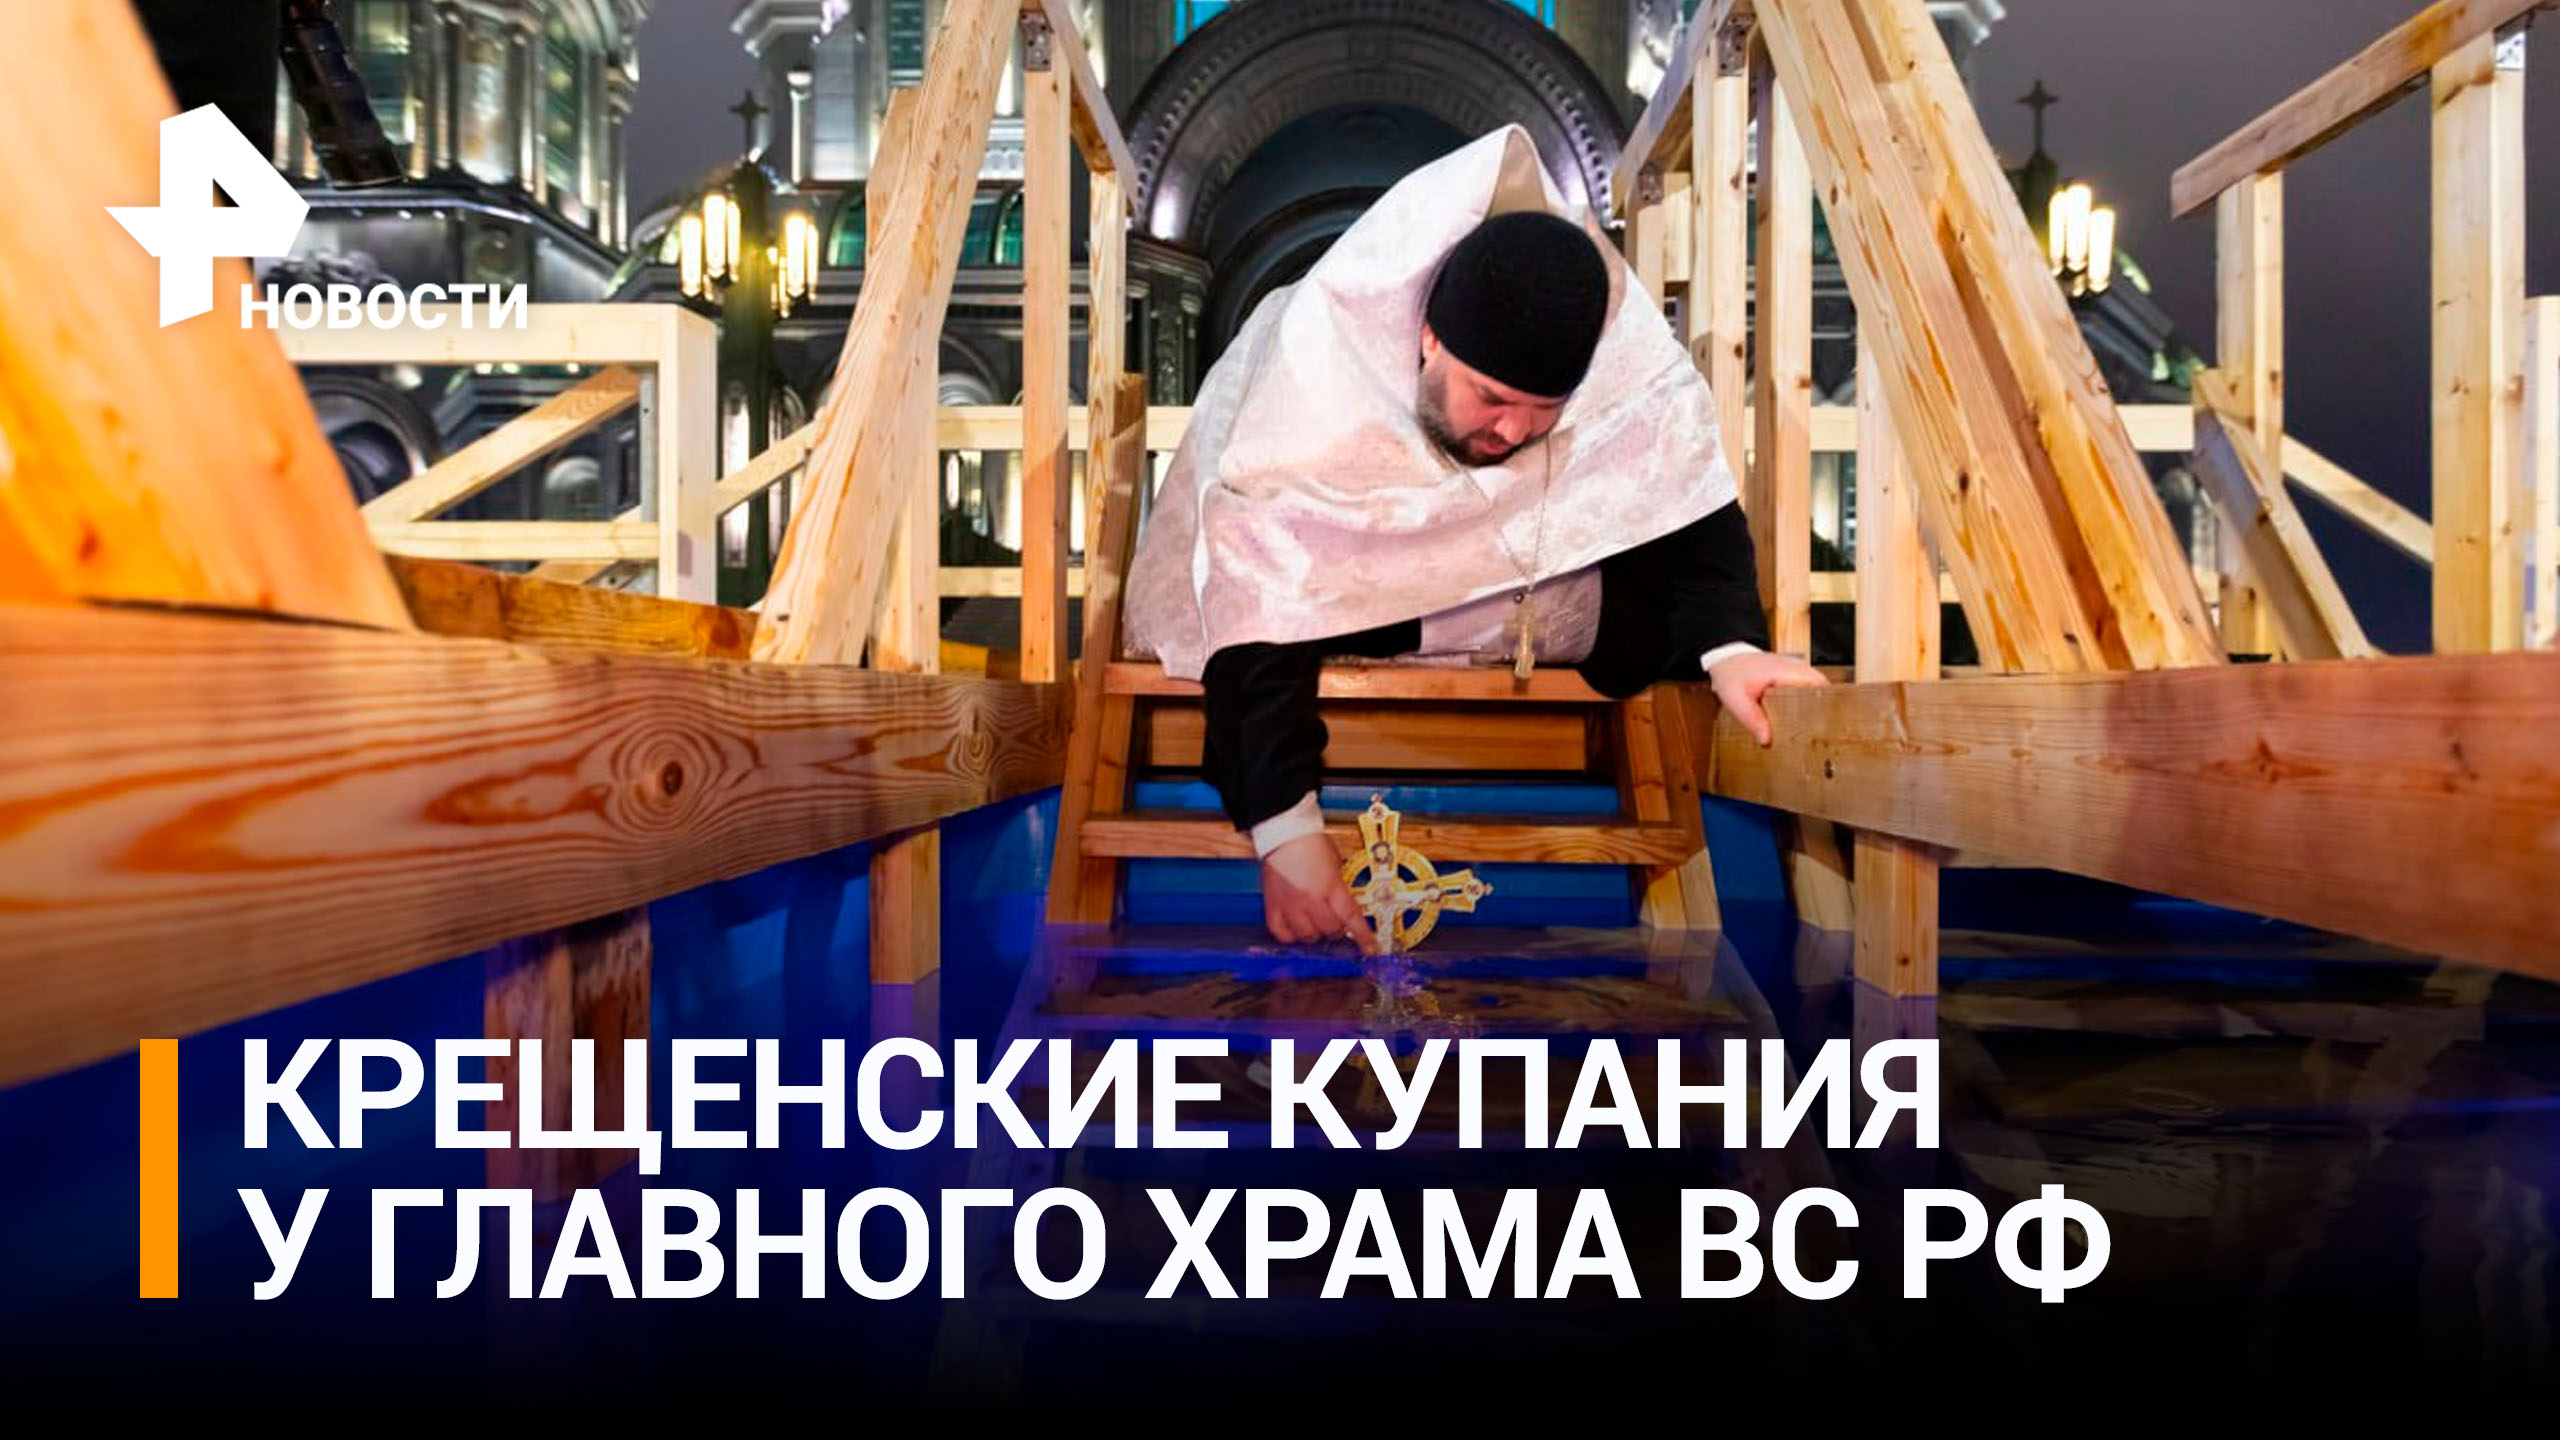 Традиционные Крещенские купания у Главного храма ВС РФ / РЕН Новости